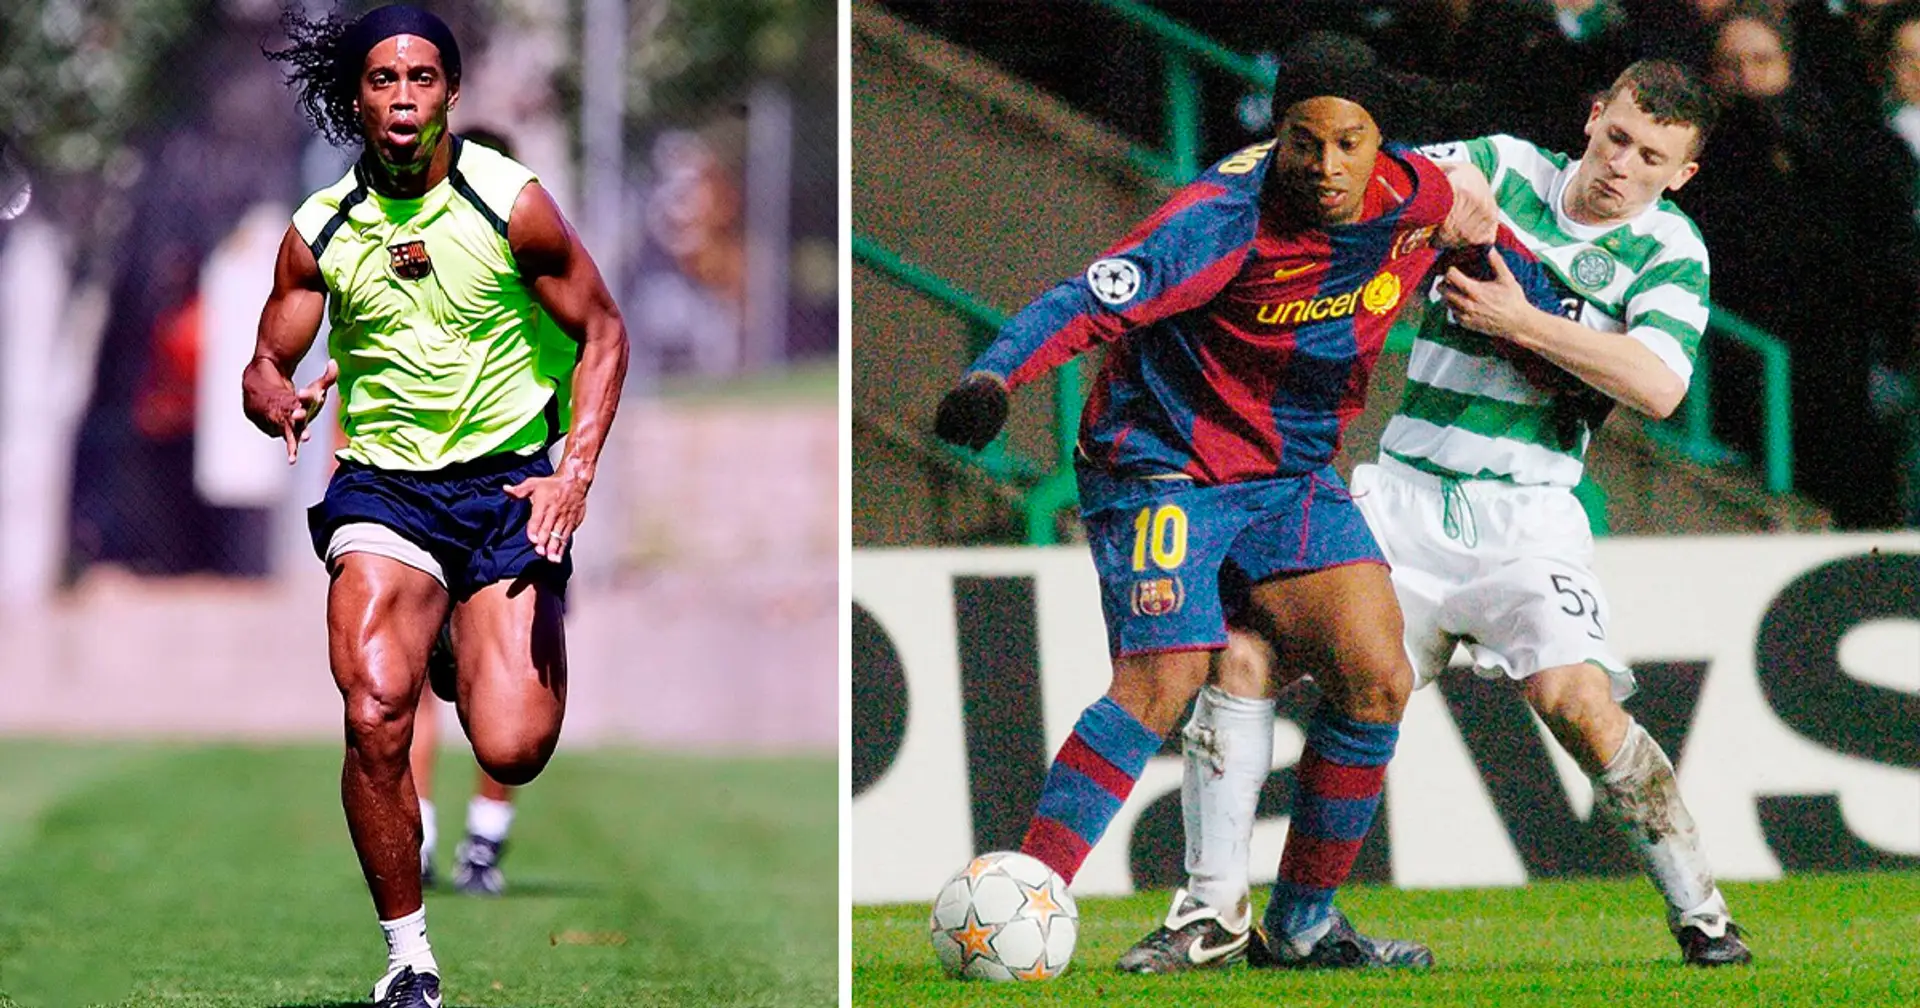 "Ronaldinho hatte den stärksten Hintern, den ich je gefühlt habe": Ex-Celtic-Verteidiger erinnert sich an Begegnung mit Ronaldinho und Barcelona